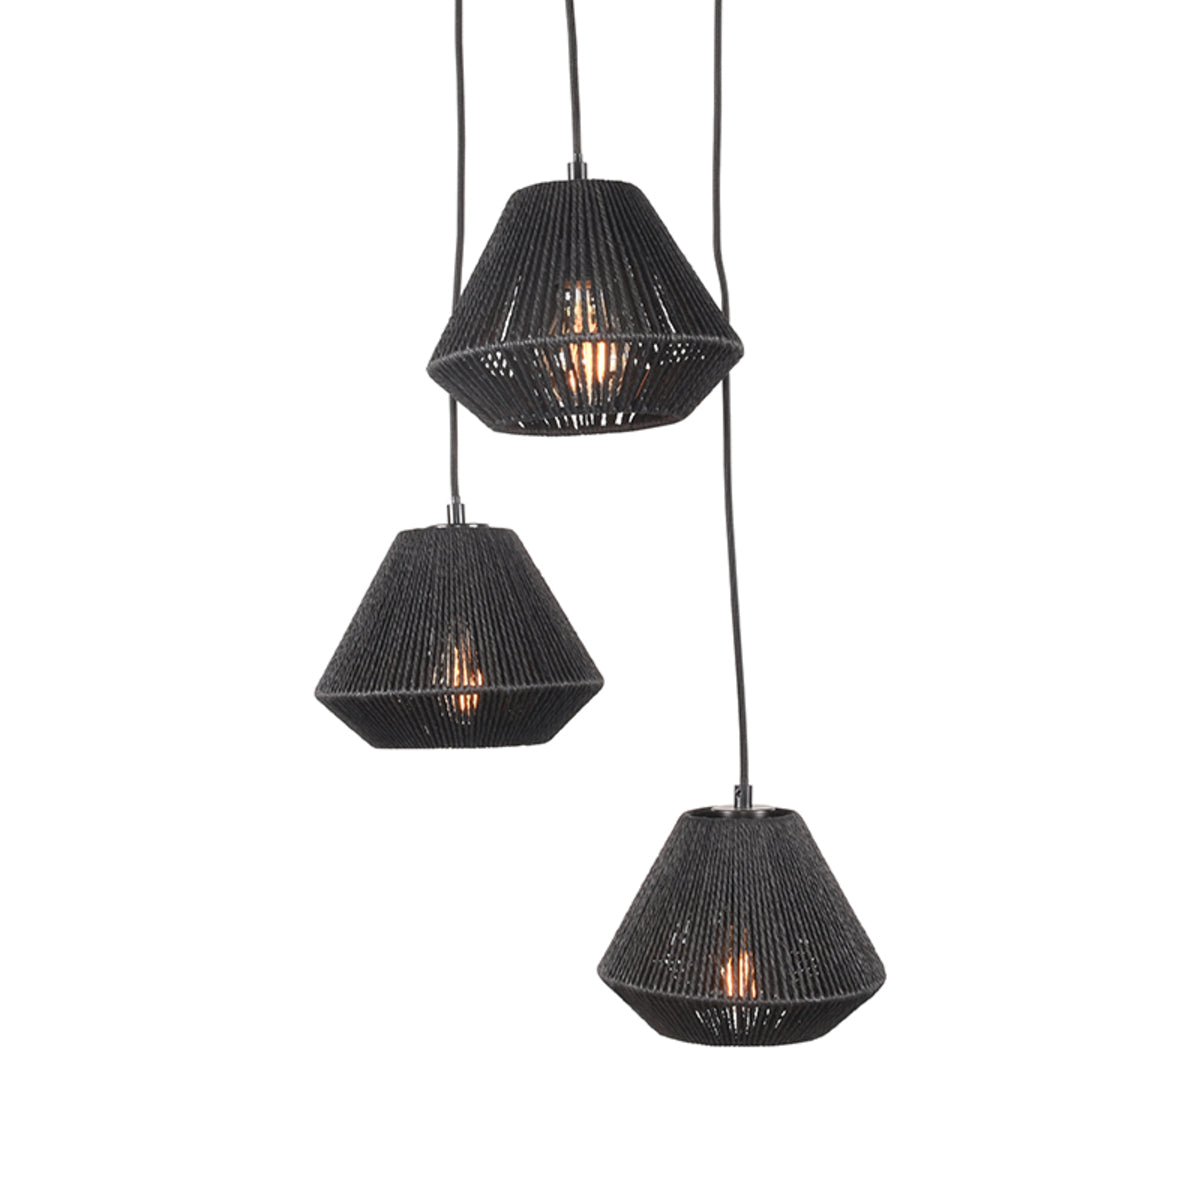 LABEL51 Hanging lamp Ibiza - Black - Jute - 3-Light